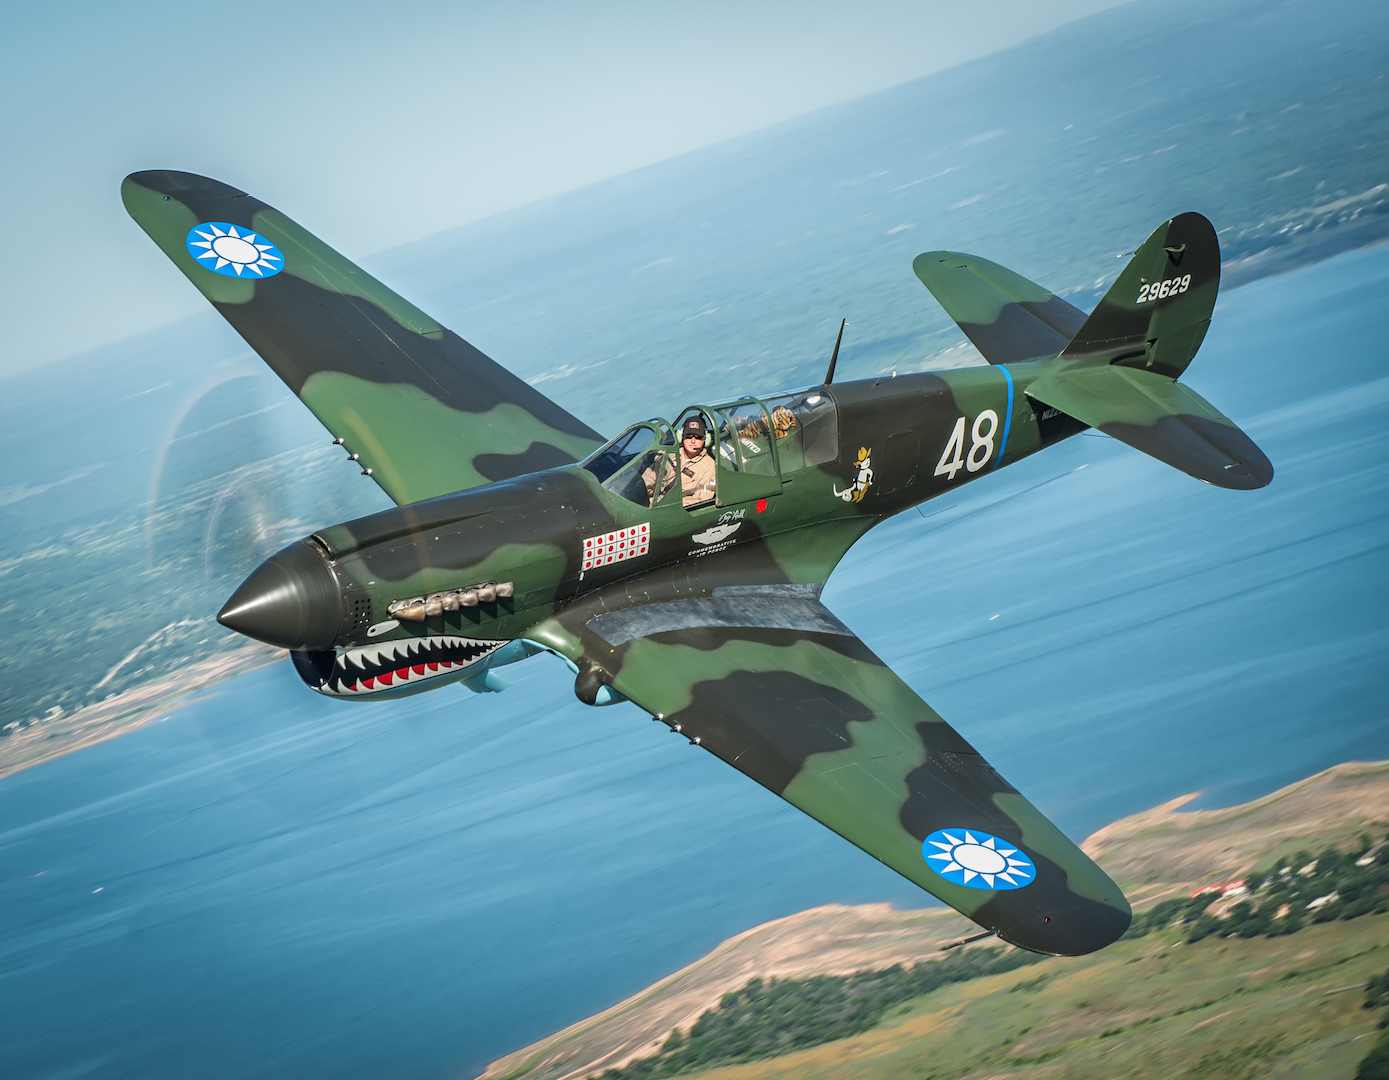 The CAF P-40 Warhawk.Photo by Glenn Watson